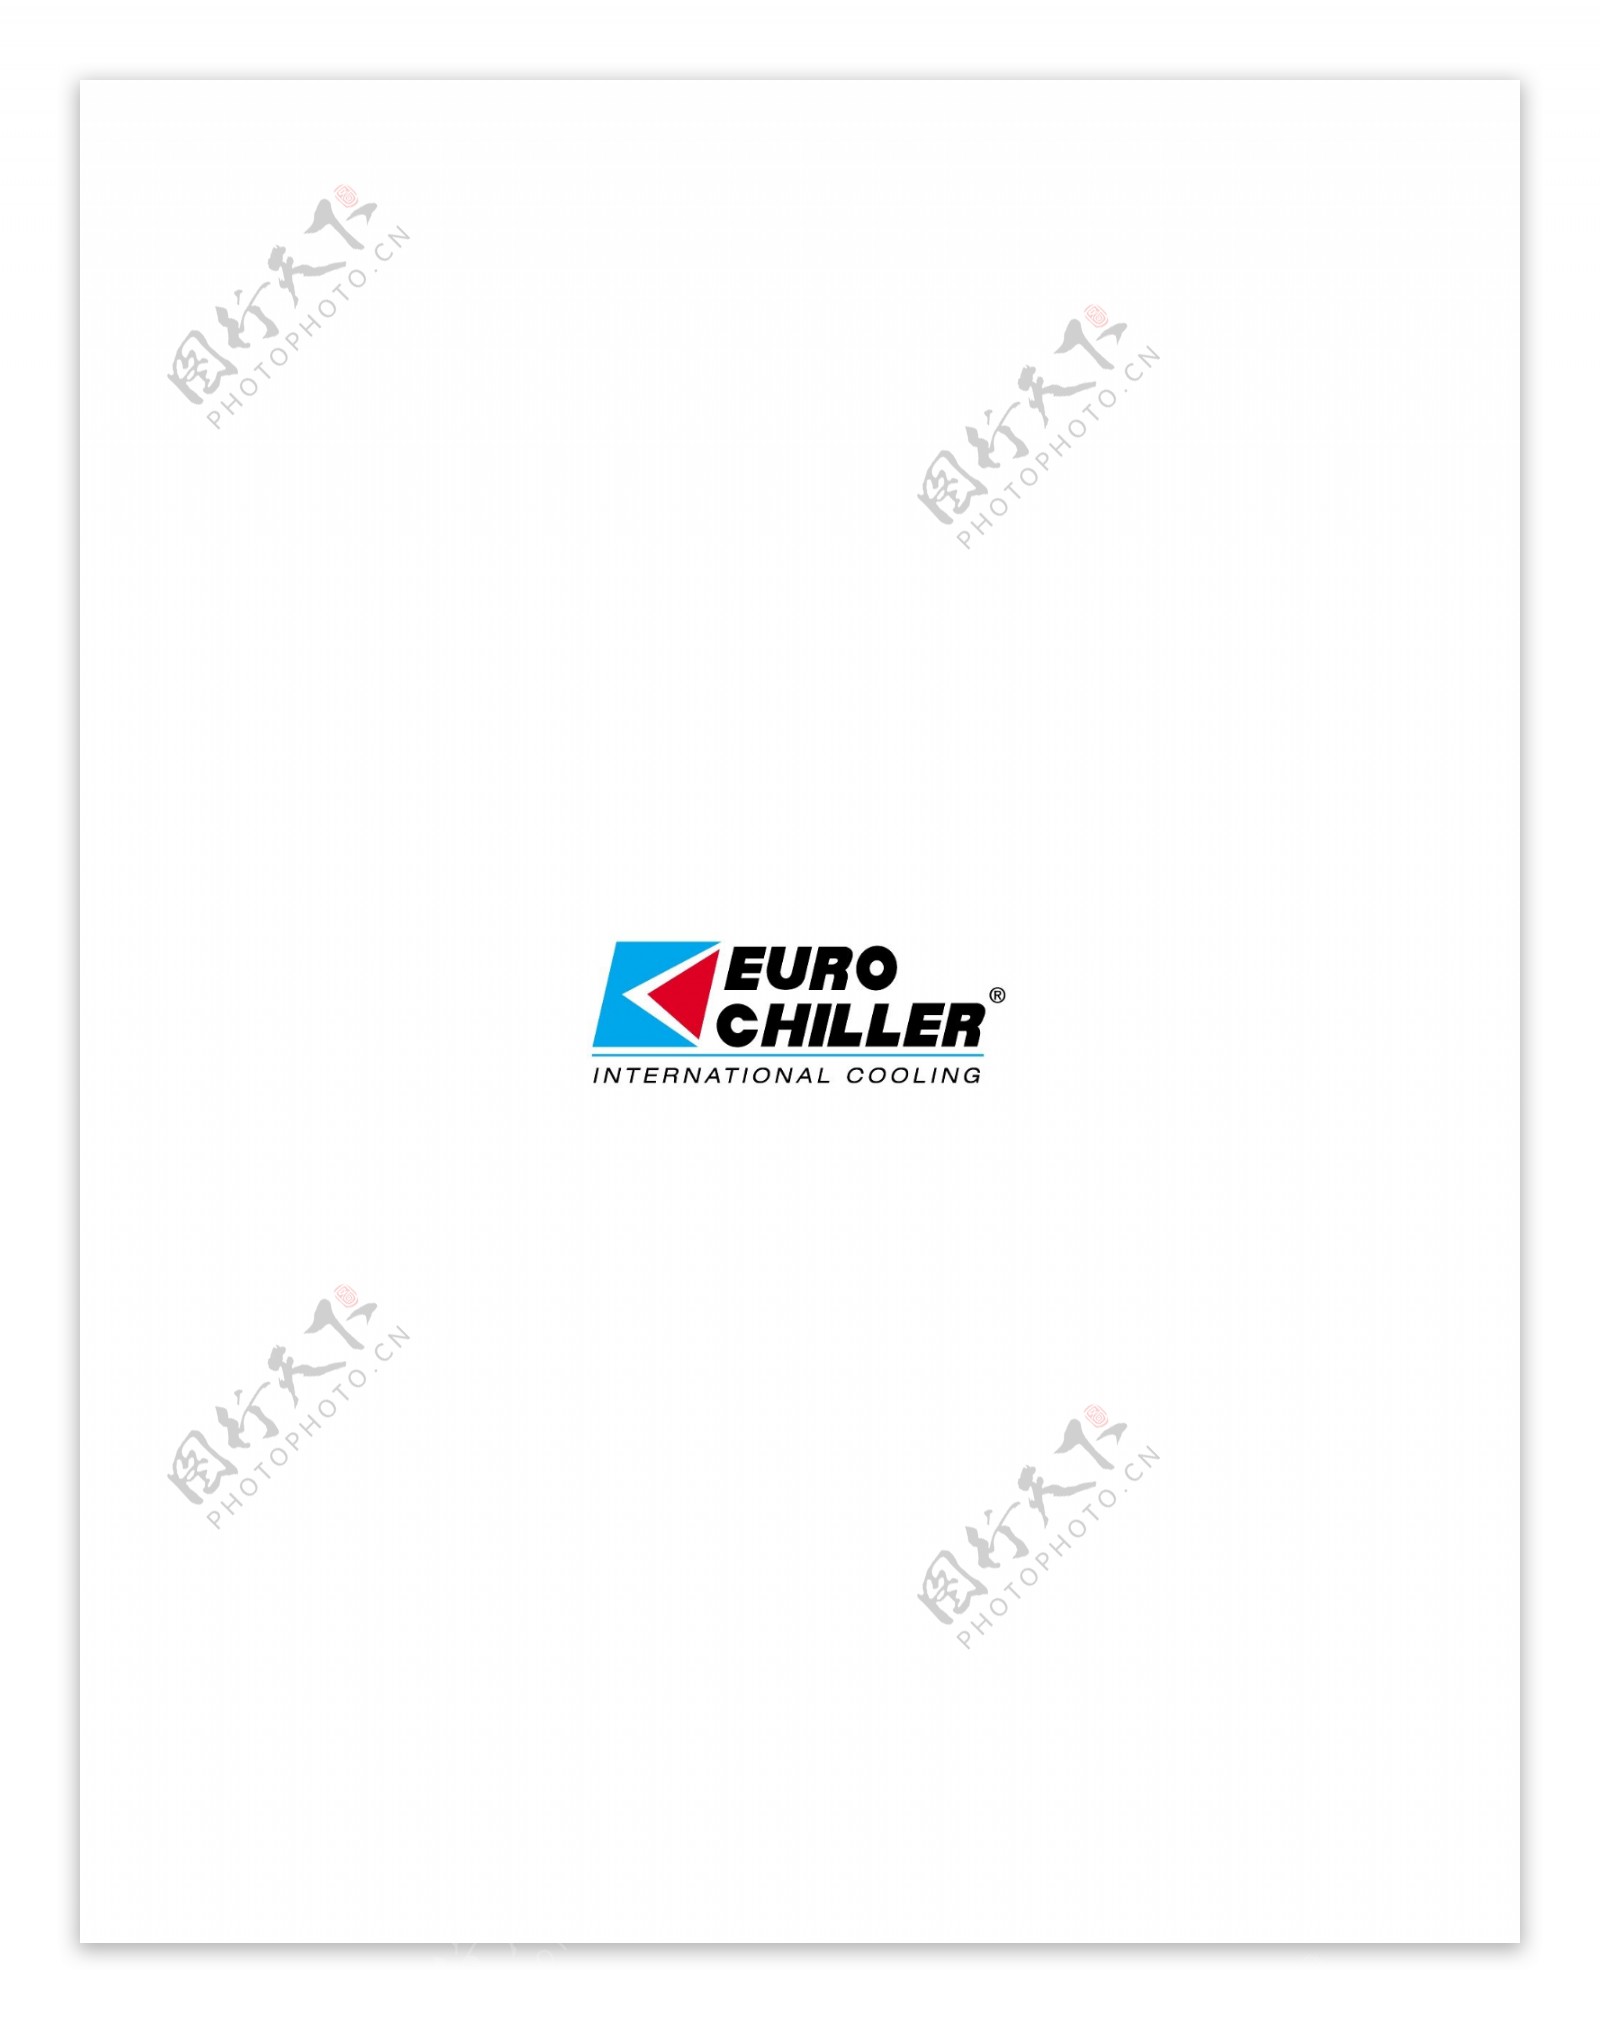 EuroChillerlogo设计欣赏EuroChiller下载标志设计欣赏